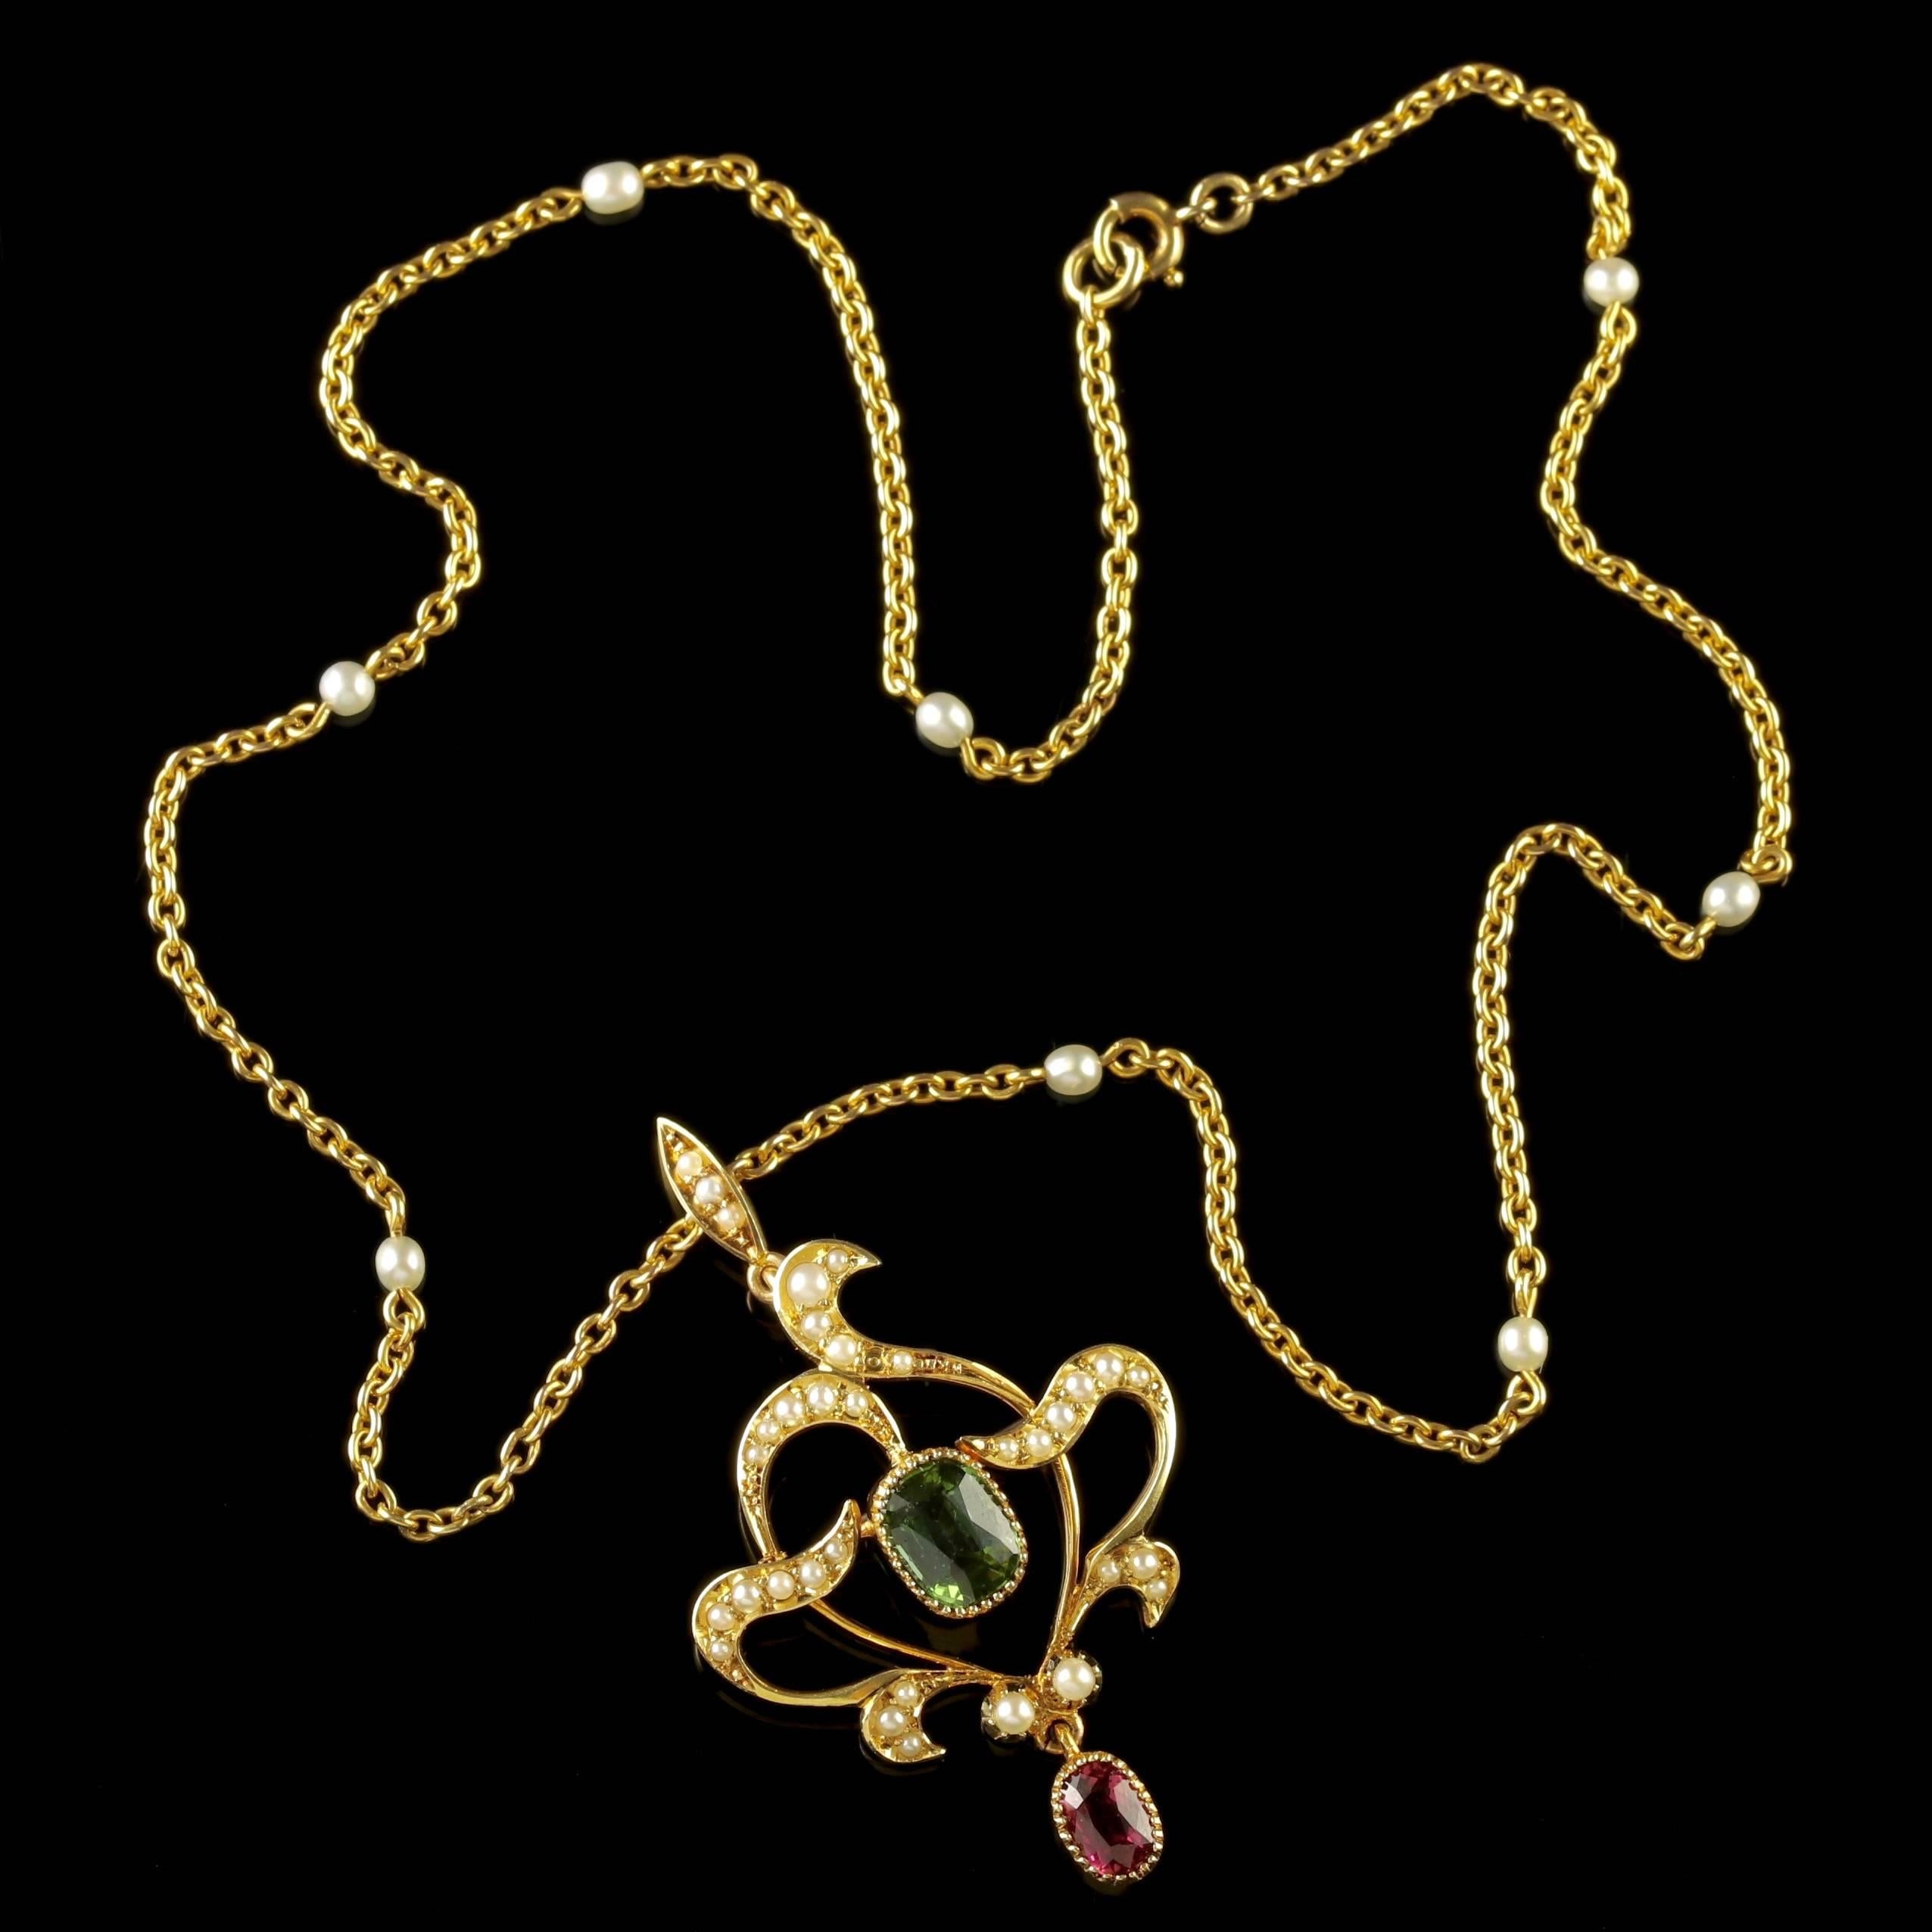 Antique Victorian 15 Carat Gold Suffragette Pearl Pendant Necklace 1